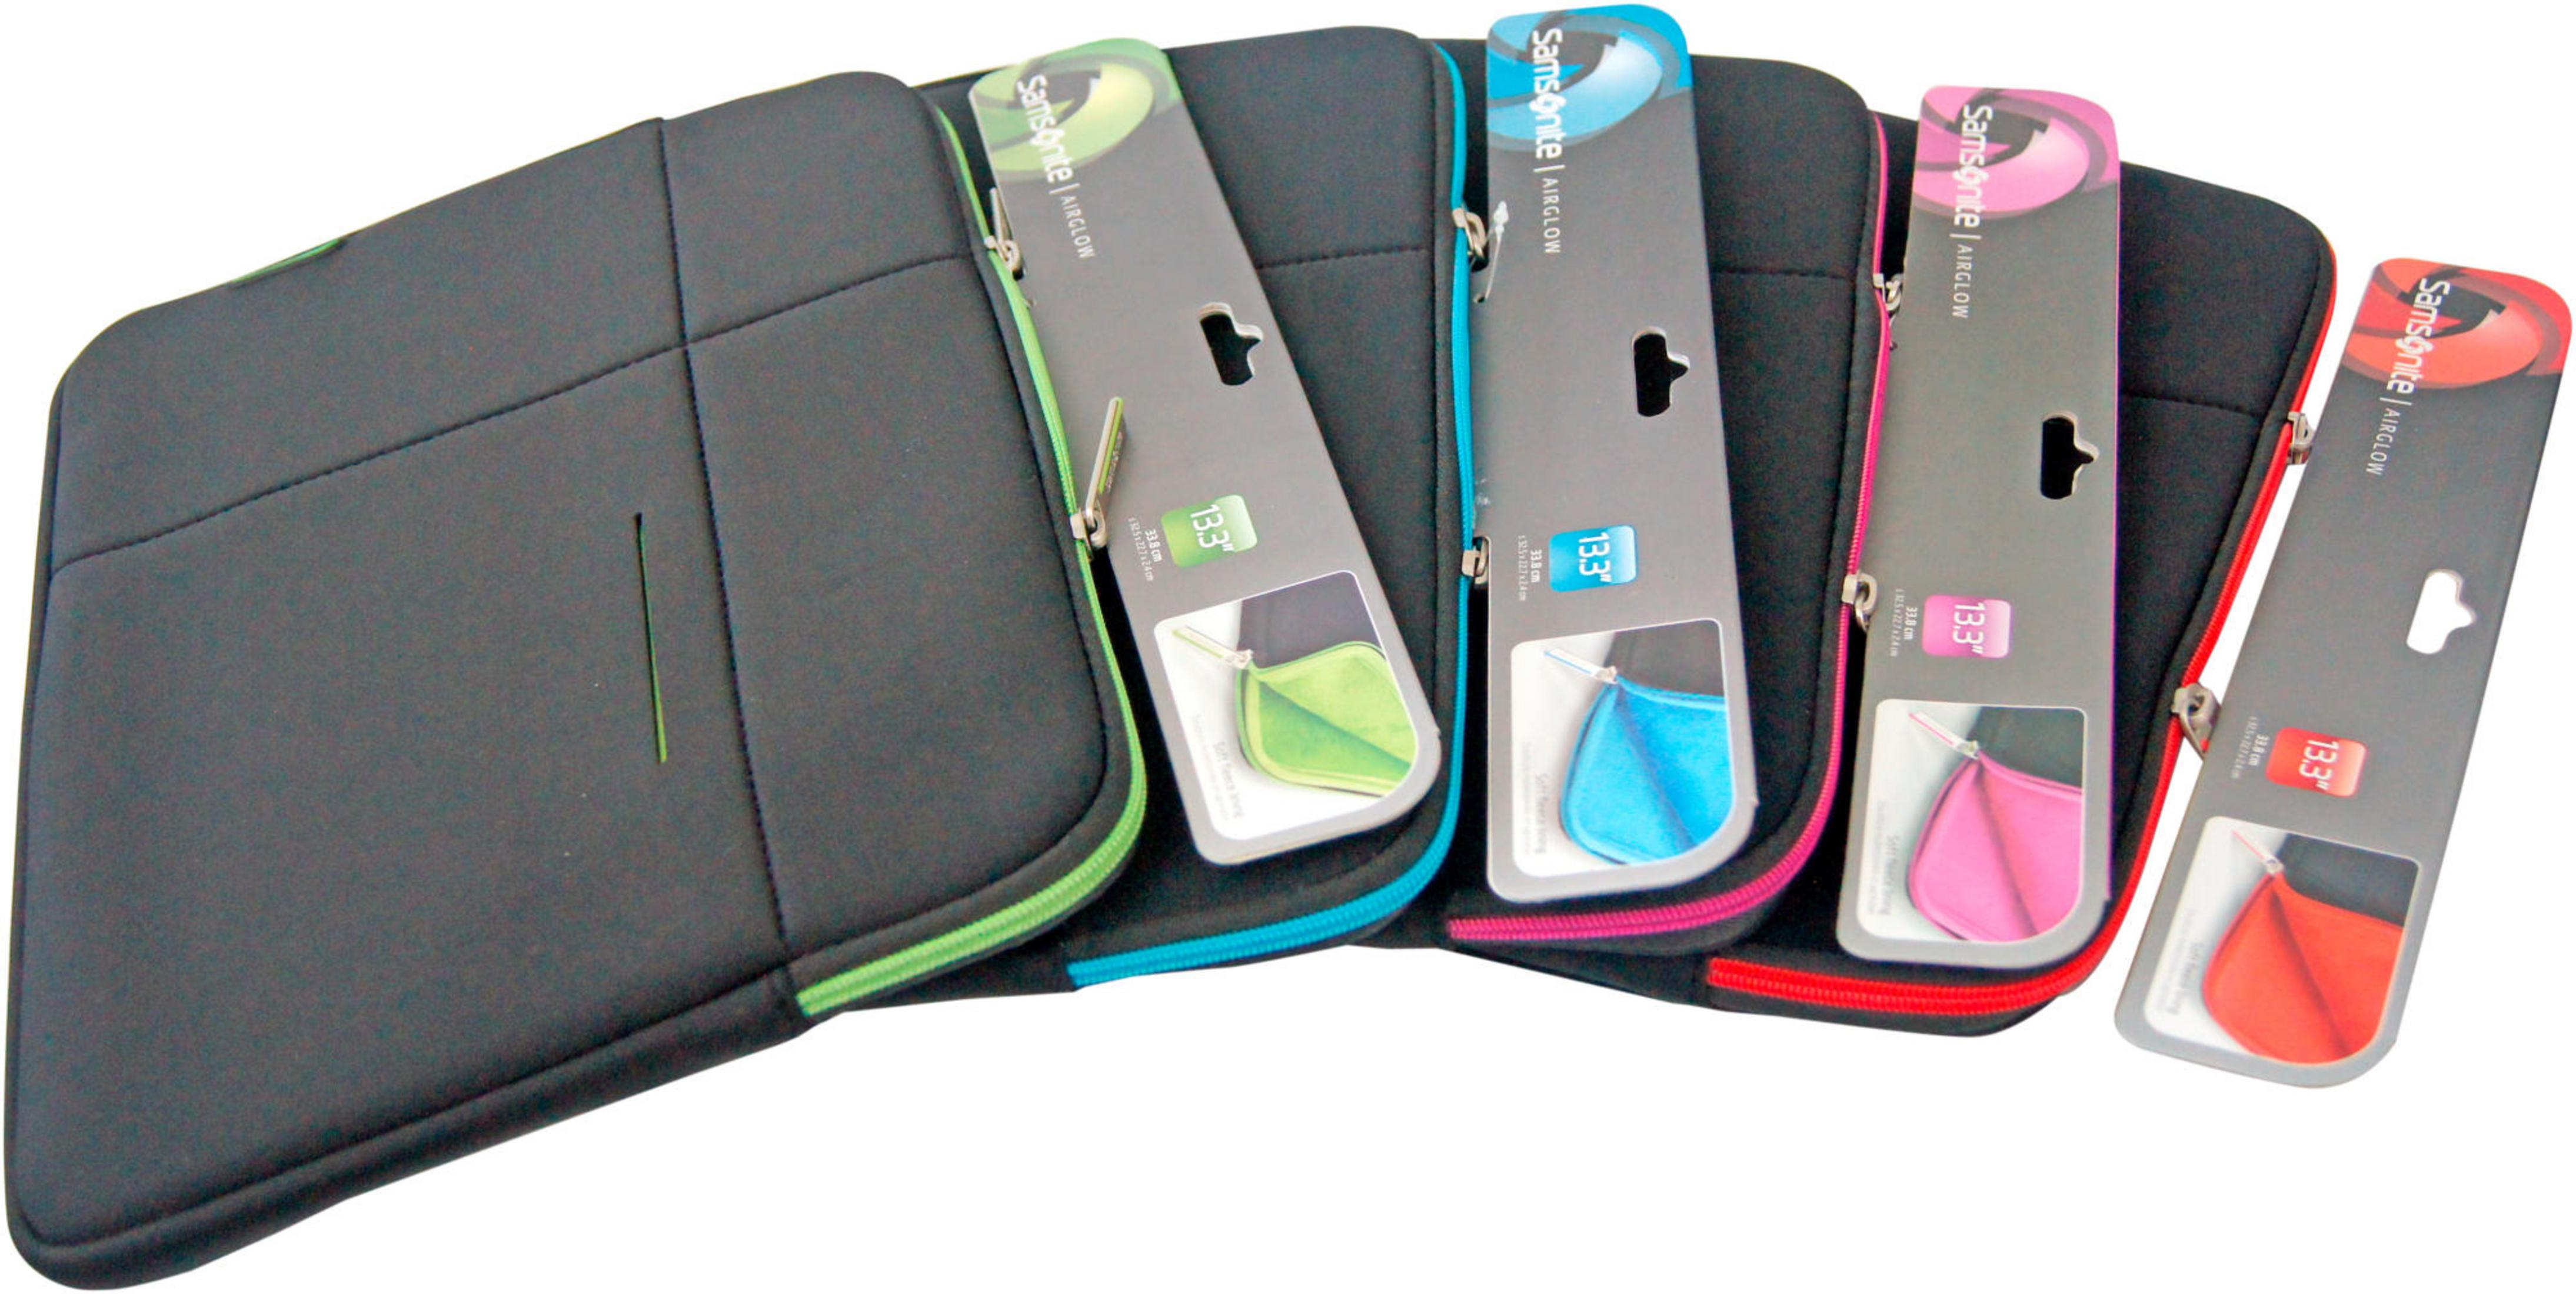 SAMSONITE 46749-1073 Airglow Notebooktasche Sling-Tasche Neopren, schwarz für Polyester, universal